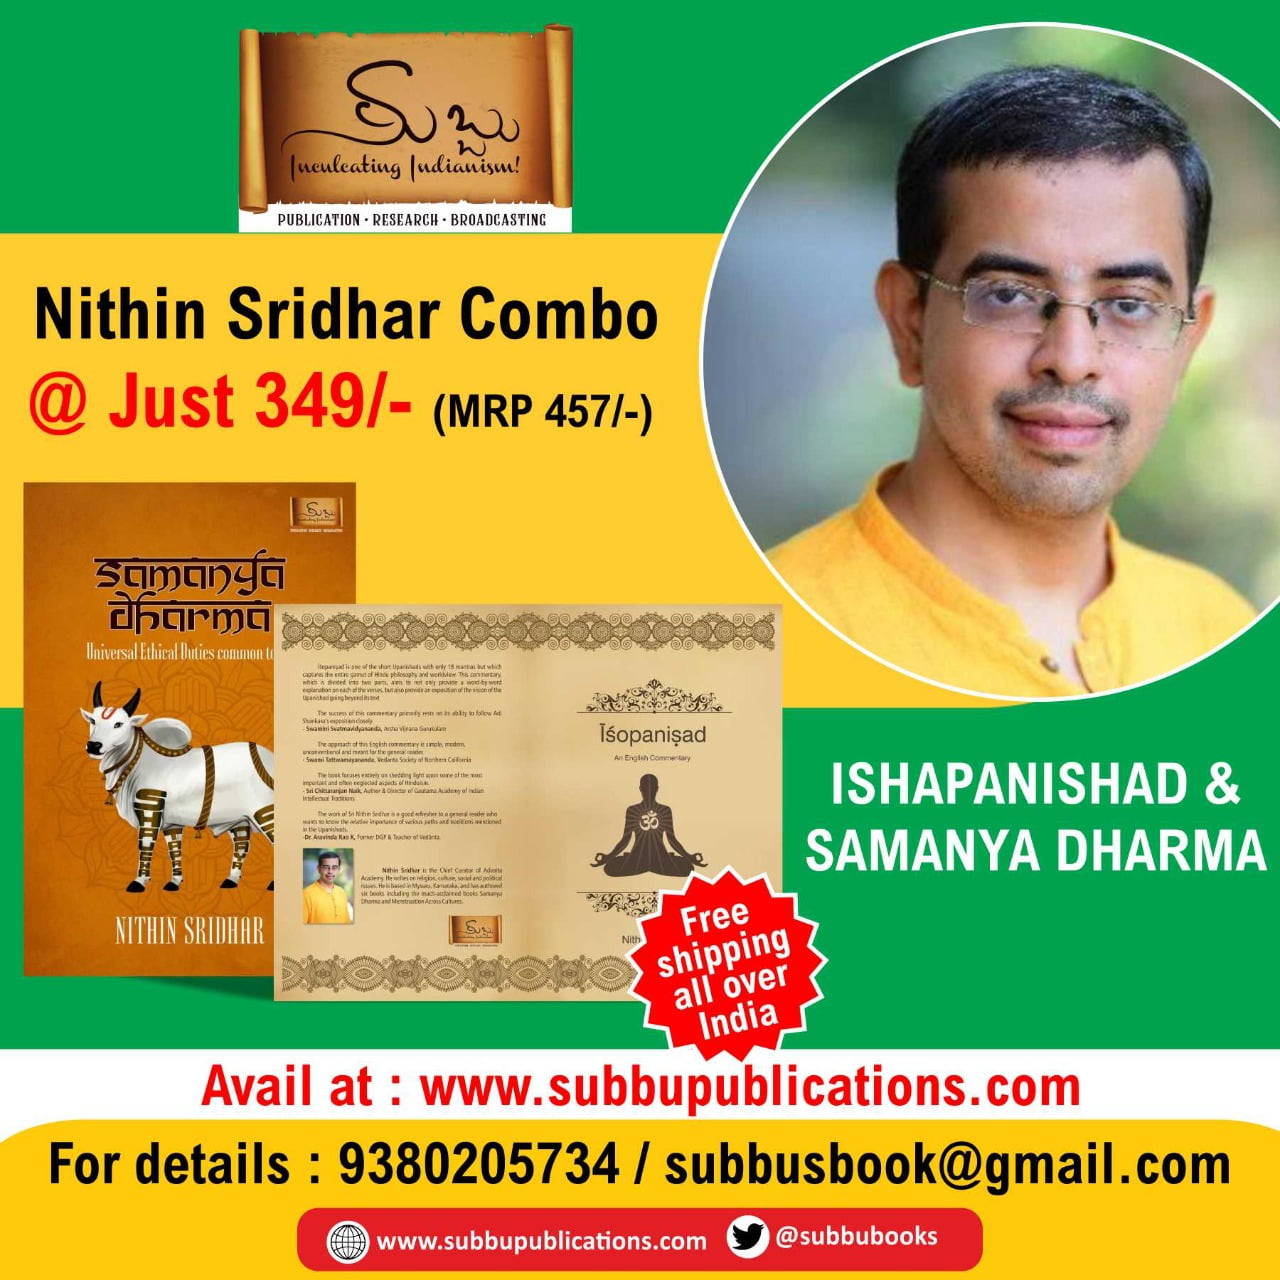 Nithin Sridhar Combo Offer @ 349/-